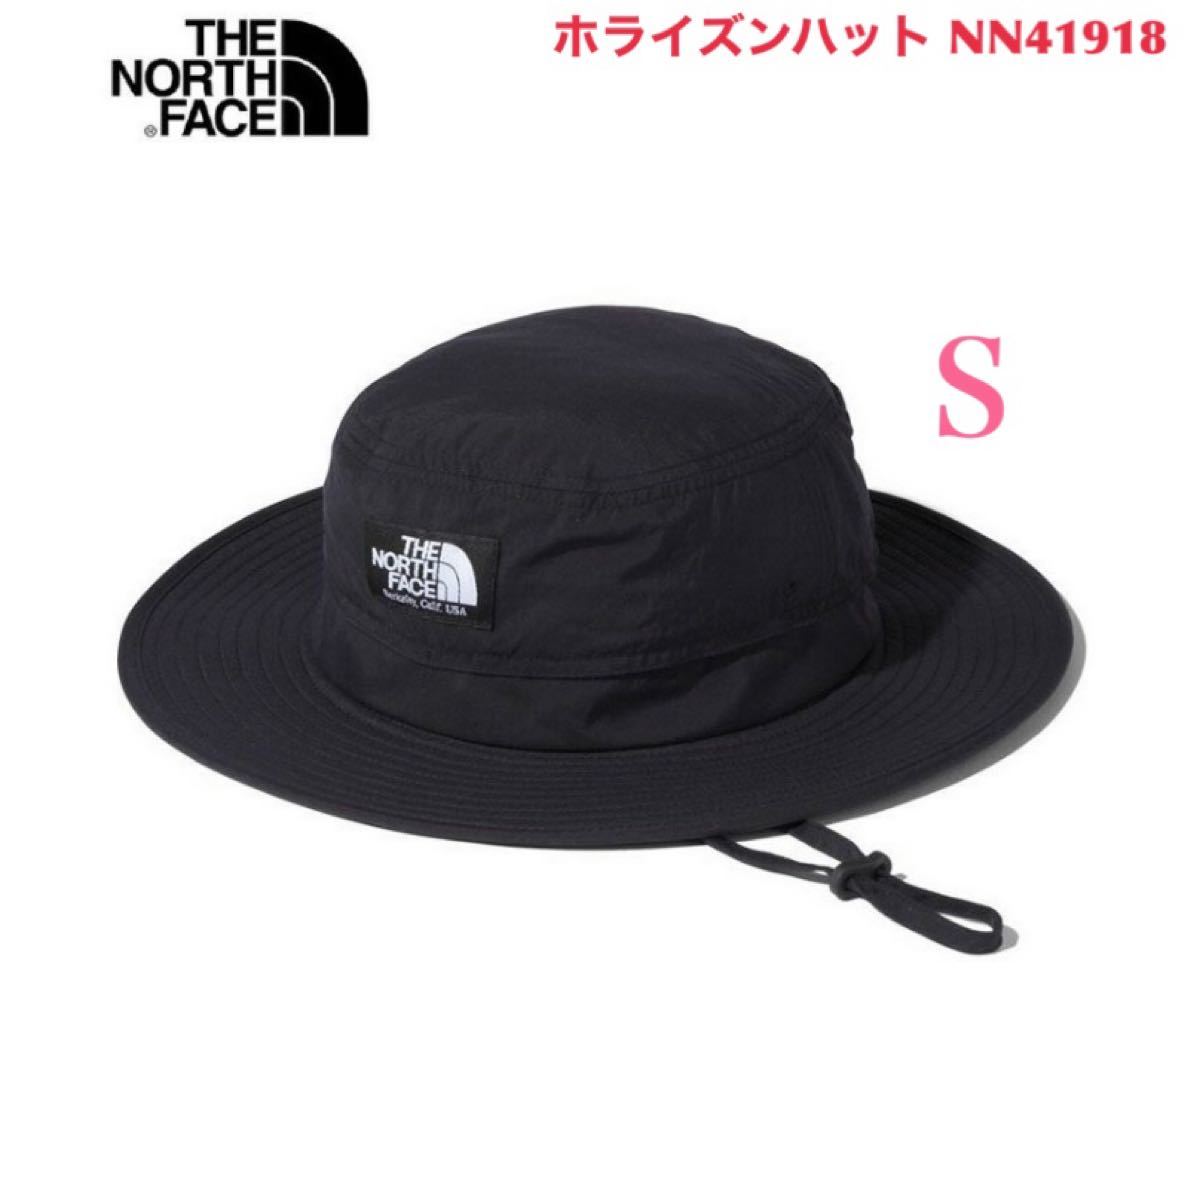 ザ・ノースフェイス THE NORTH FACE ハット Horizon Hat ホライズンハット NN41918 ブラック S